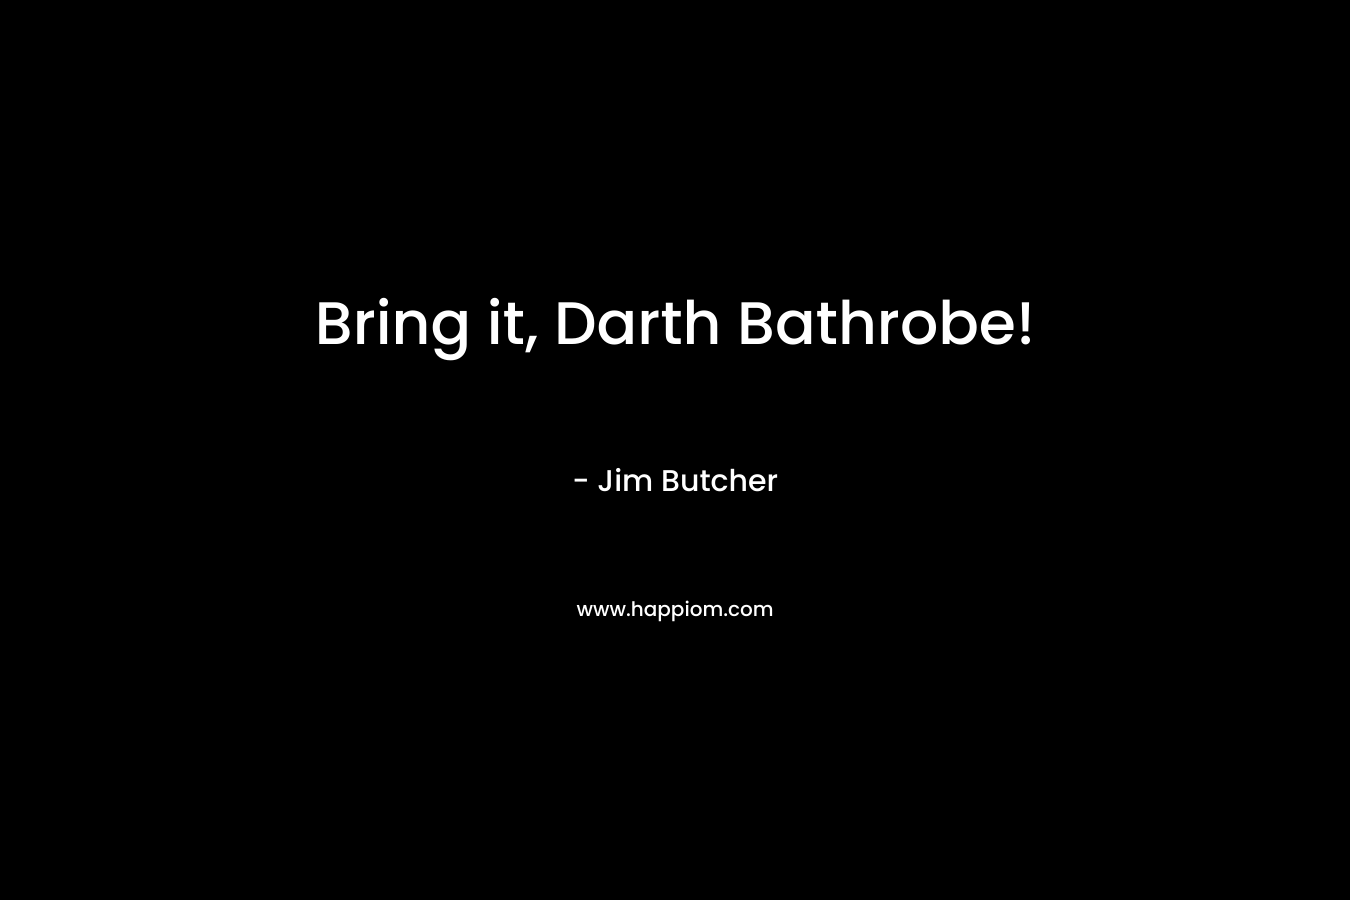 Bring it, Darth Bathrobe!